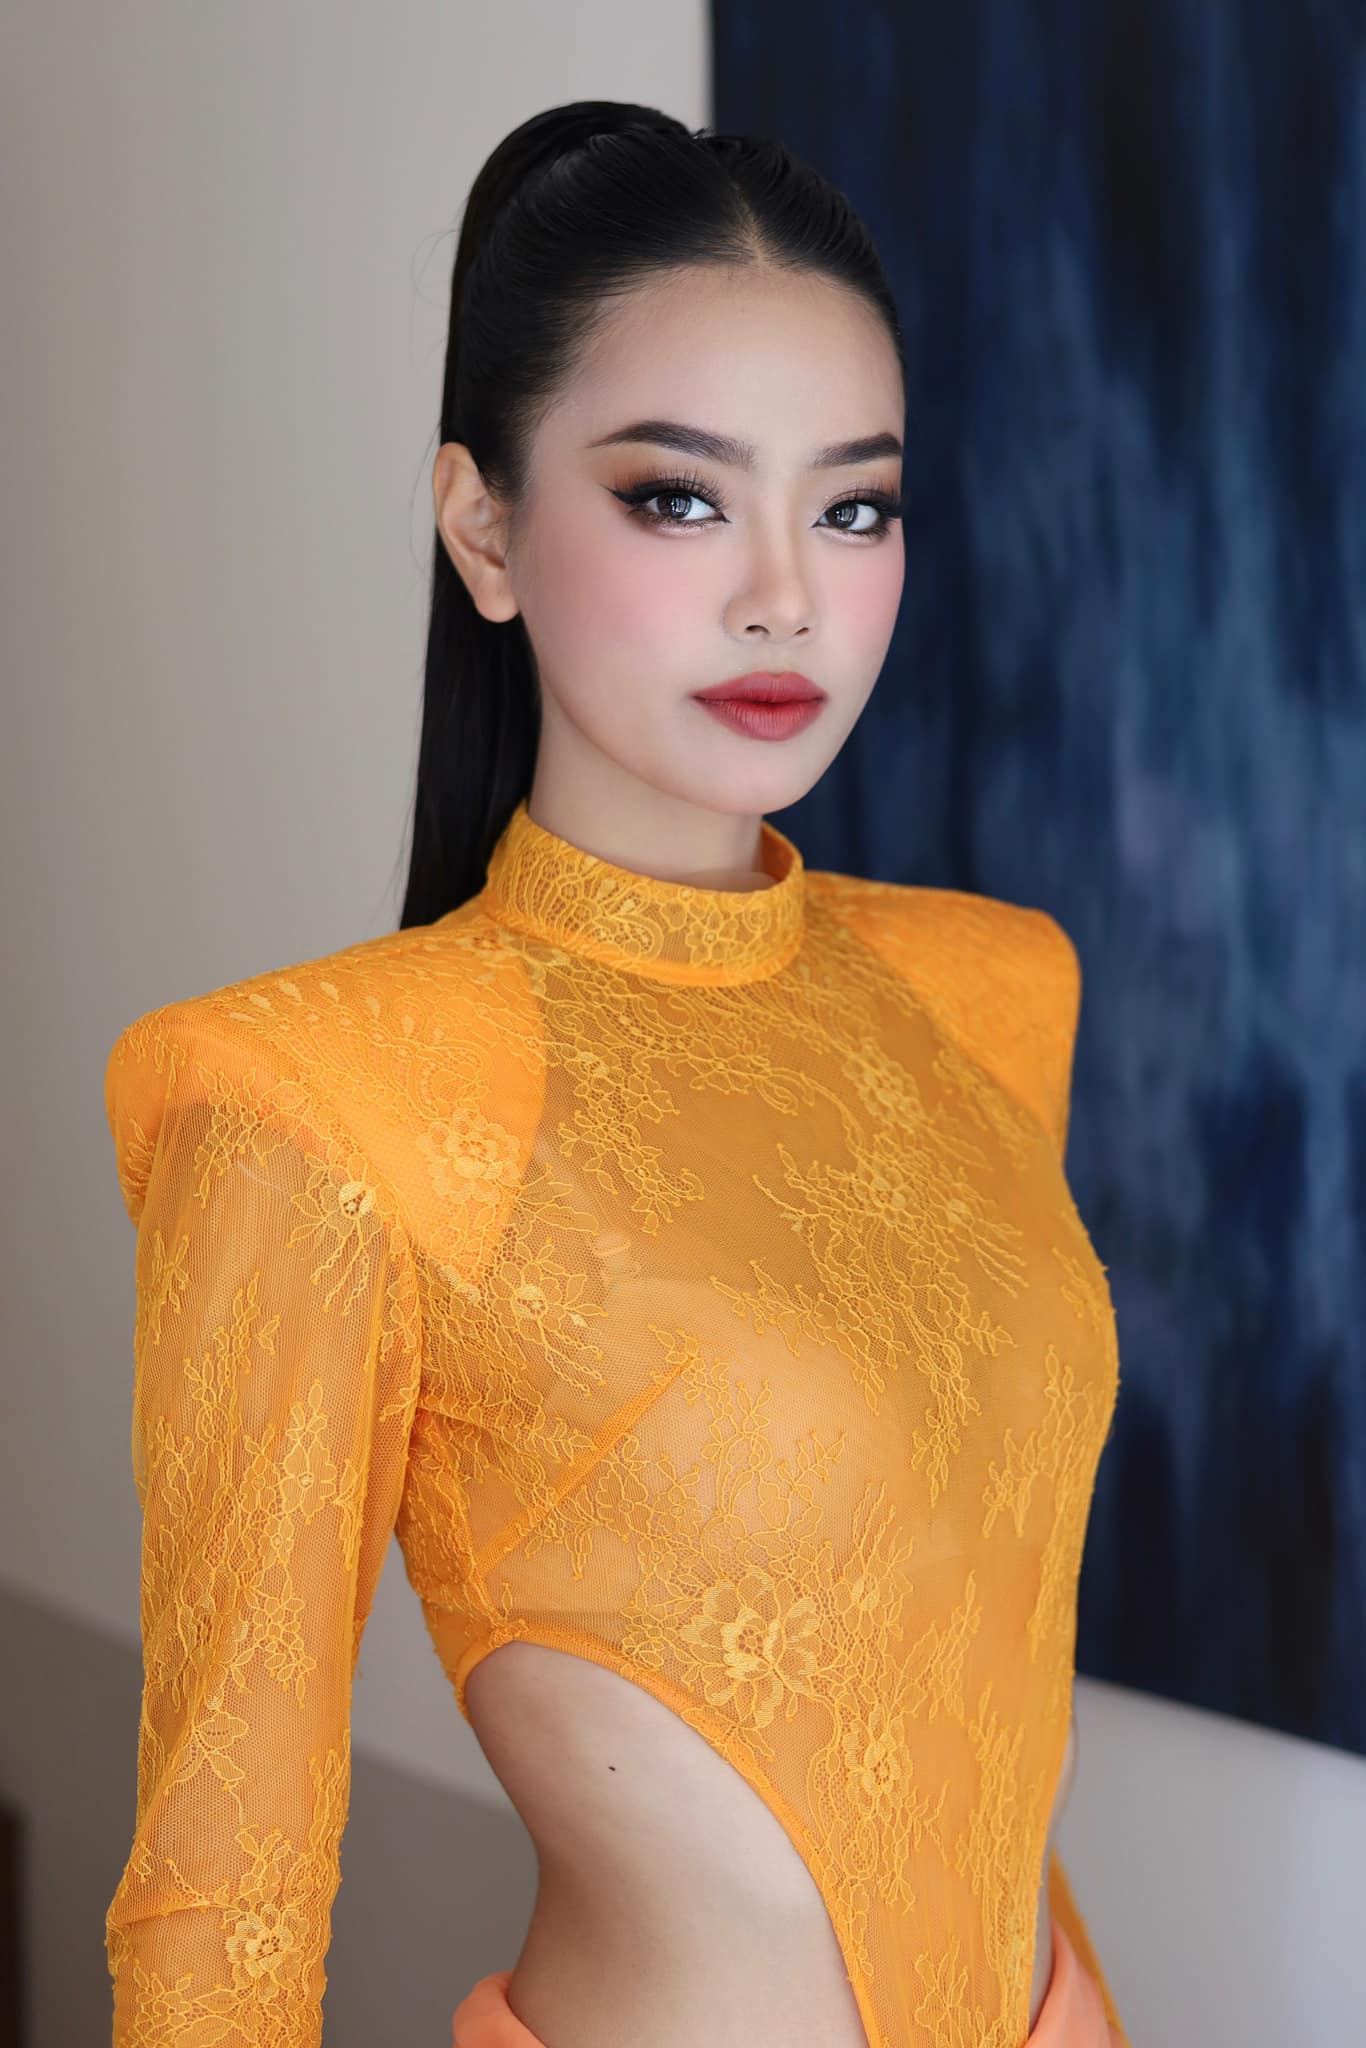 Top 5 ứng cử viên sáng giá tại chung khảo Miss Grand Vietnam 2023, Đặng Hoàng Tâm Như nổi bật nhất? - Ảnh 3.